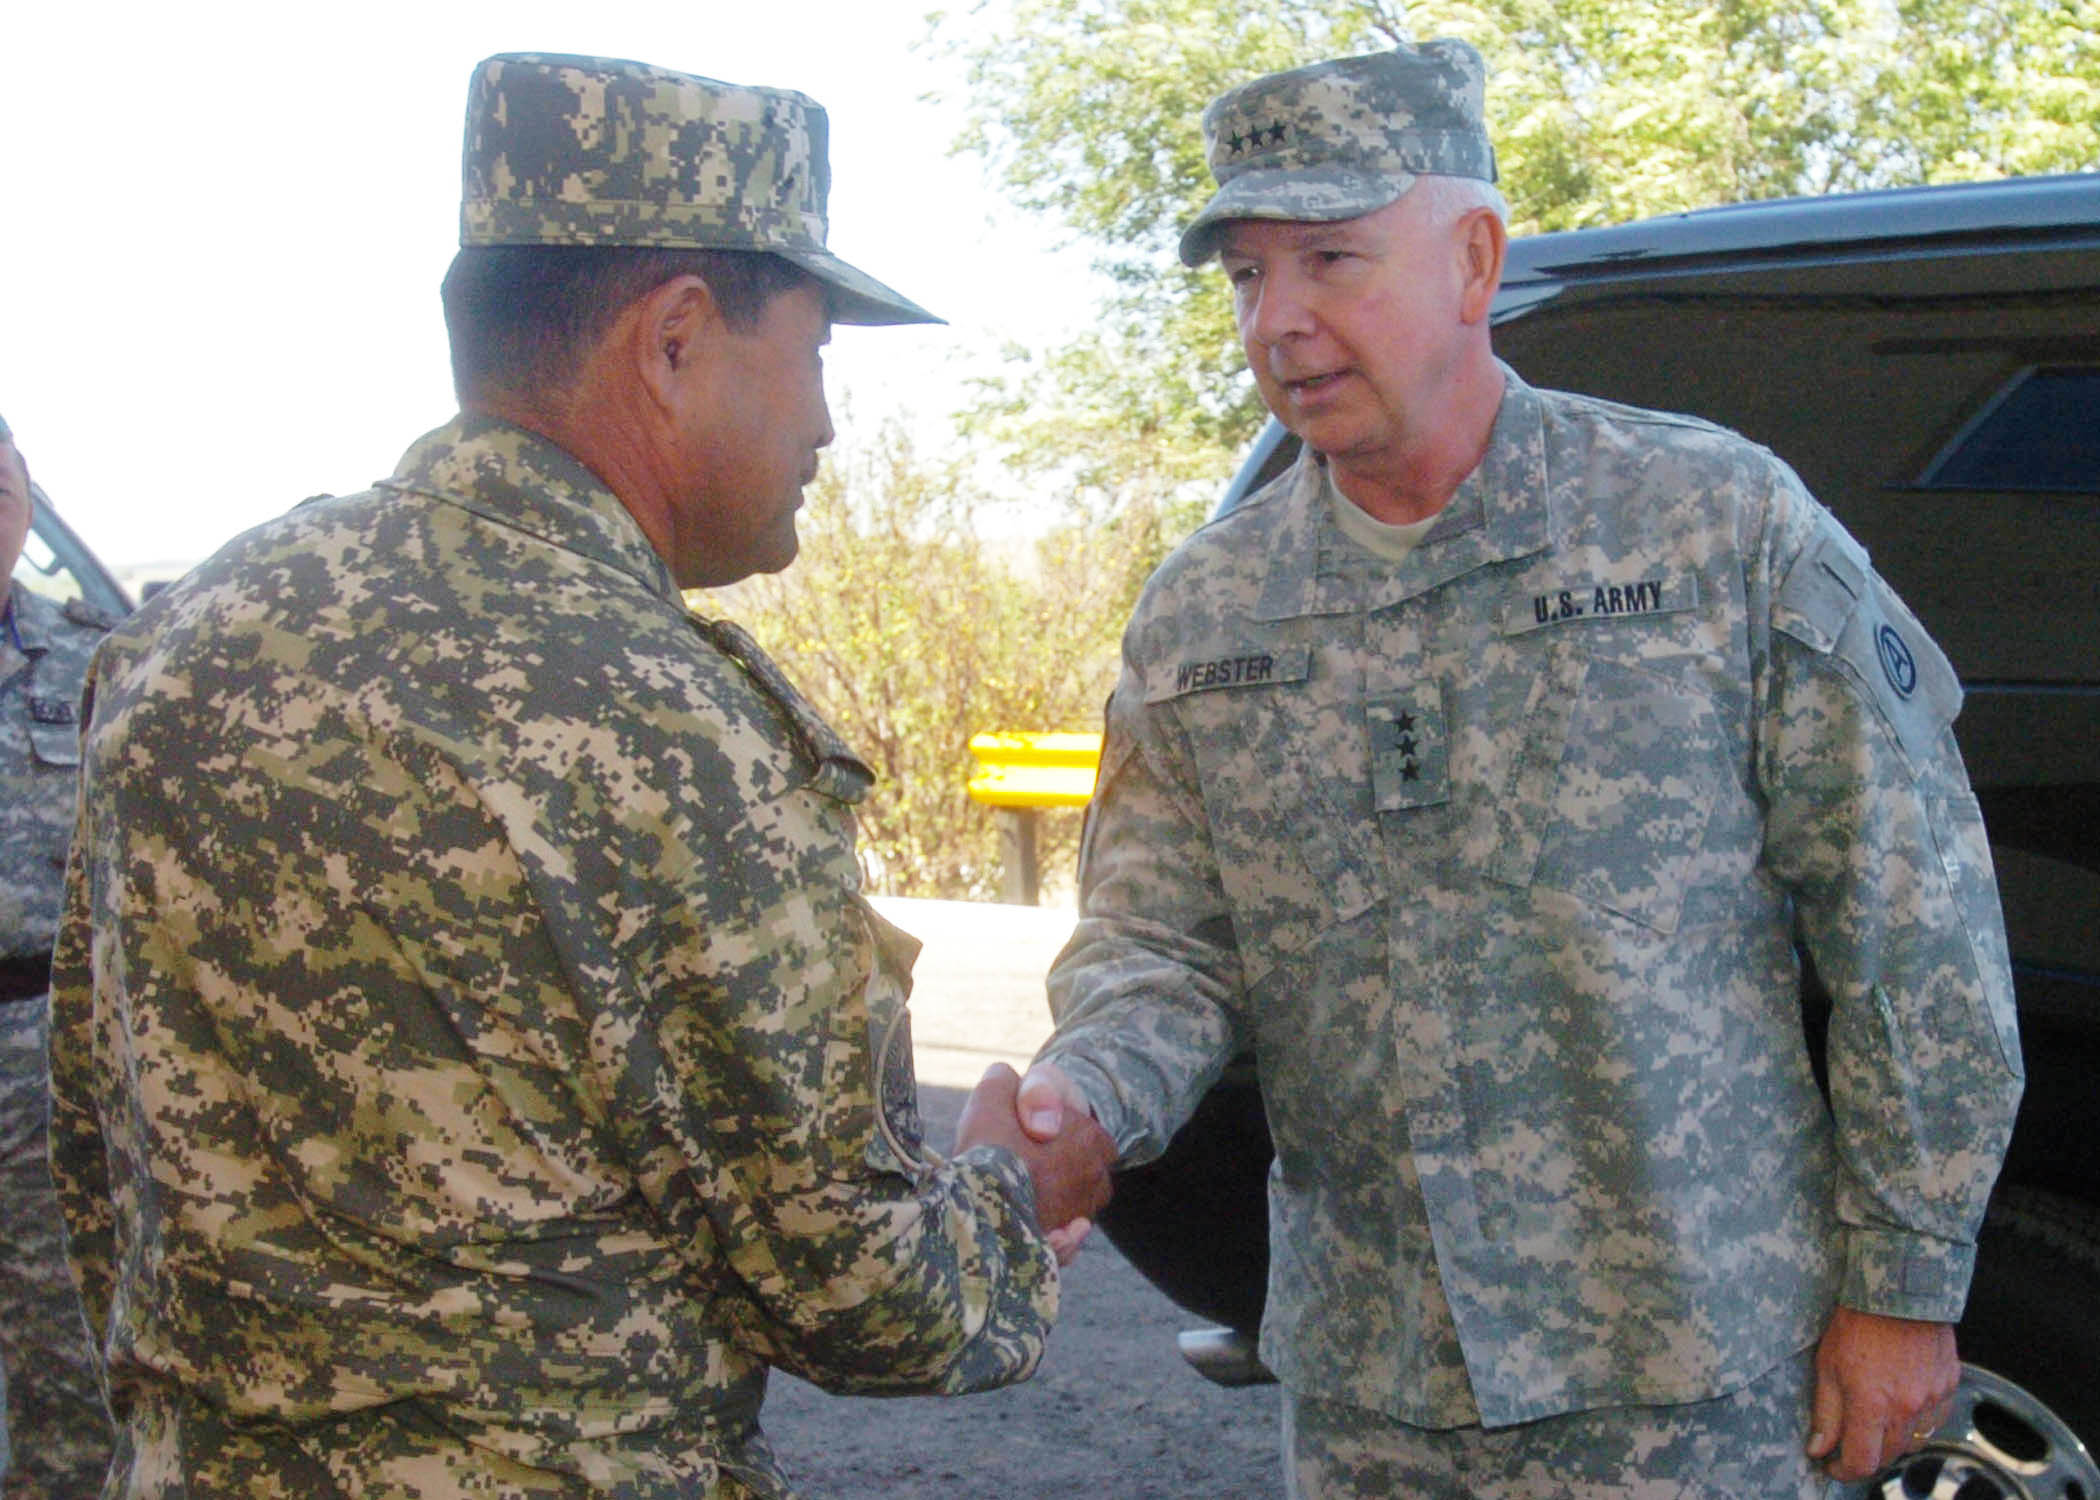 Kazakh Major General Adilbek Aldaberpenov (left) greets Lieutenant General William Glenn Webster of the United States Army, 2009.